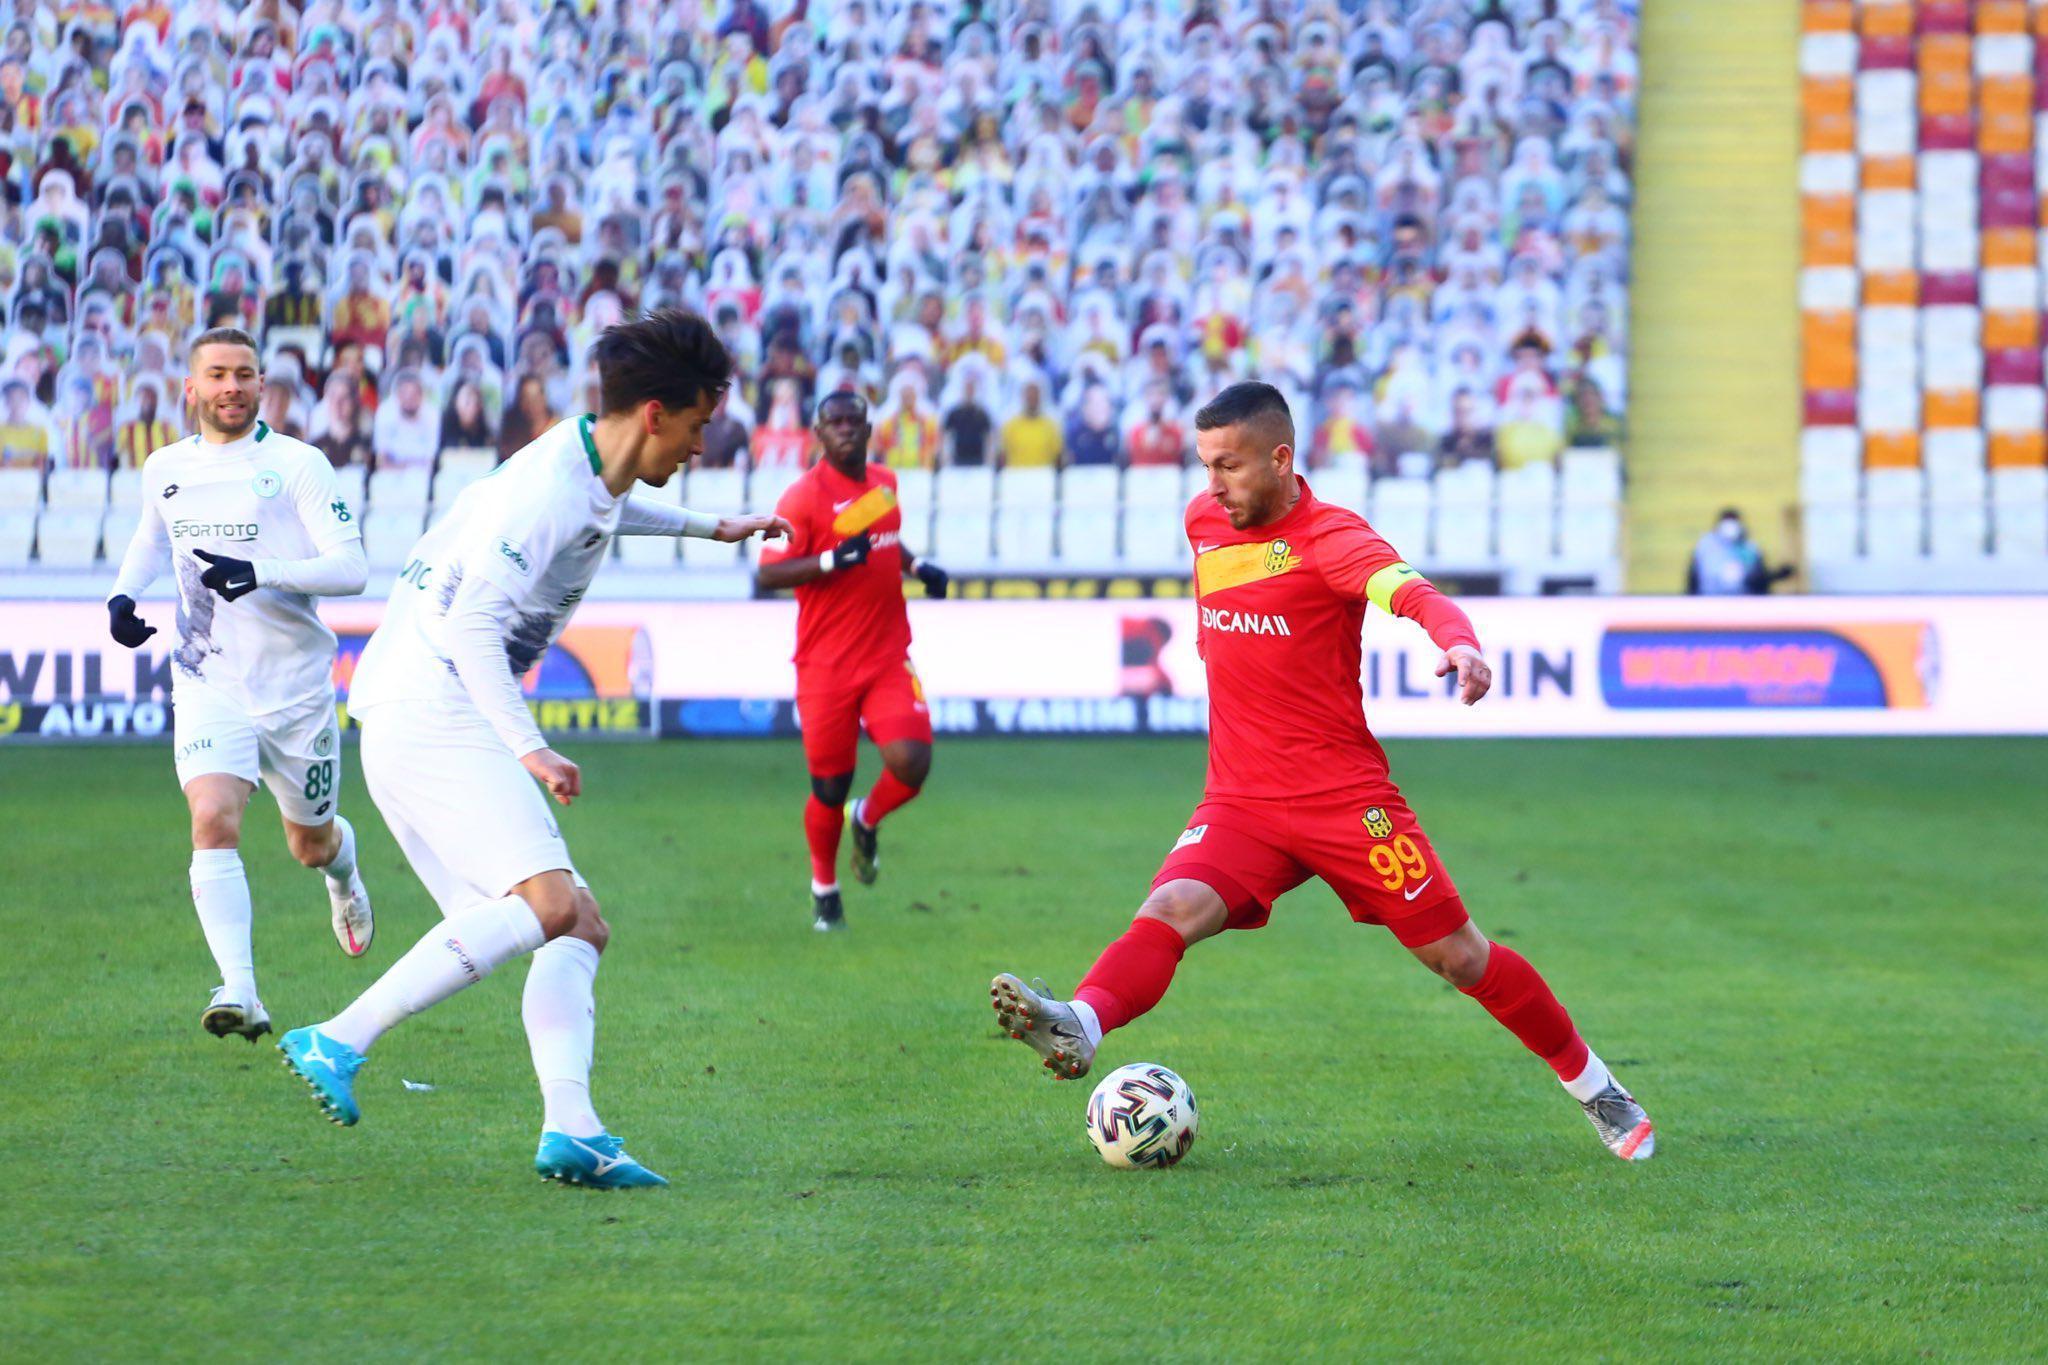 ÖZET | Yeni Malatyaspor - Konyaspor maç sonucu: 2-3